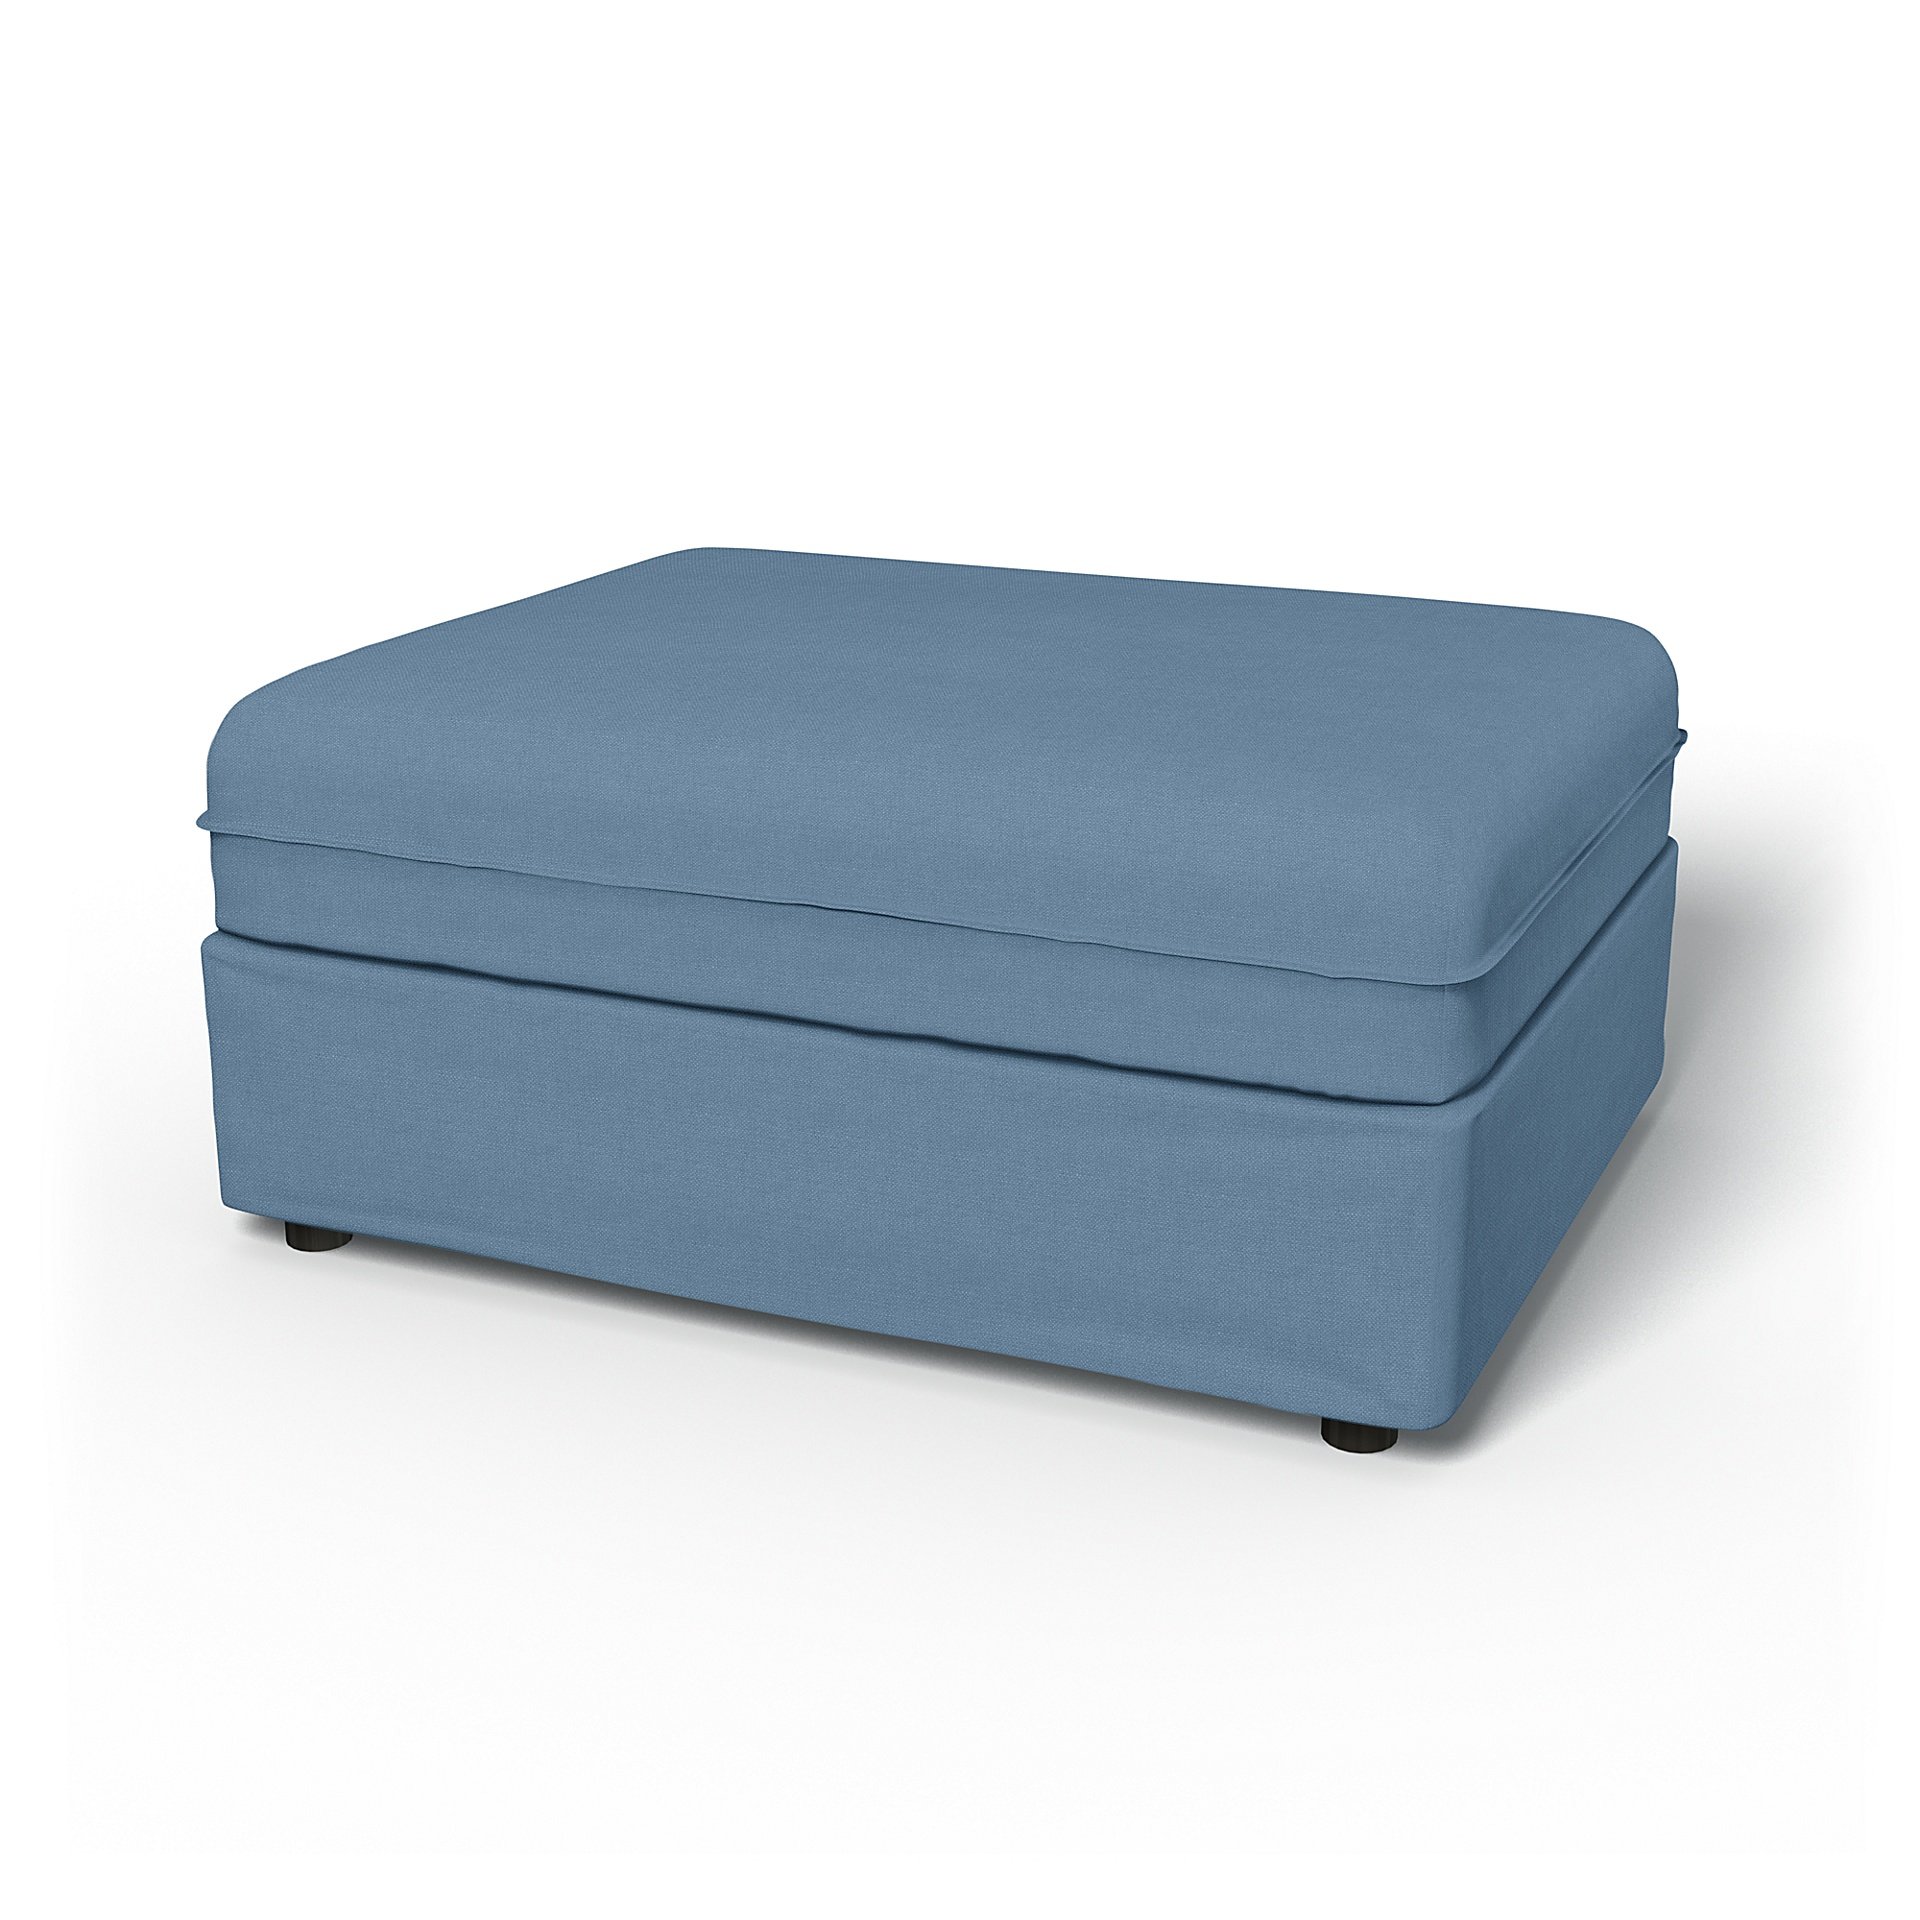 IKEA - Vallentuna Seat Module Cover 100x80cm 39x32in, Vintage Blue, Linen - Bemz